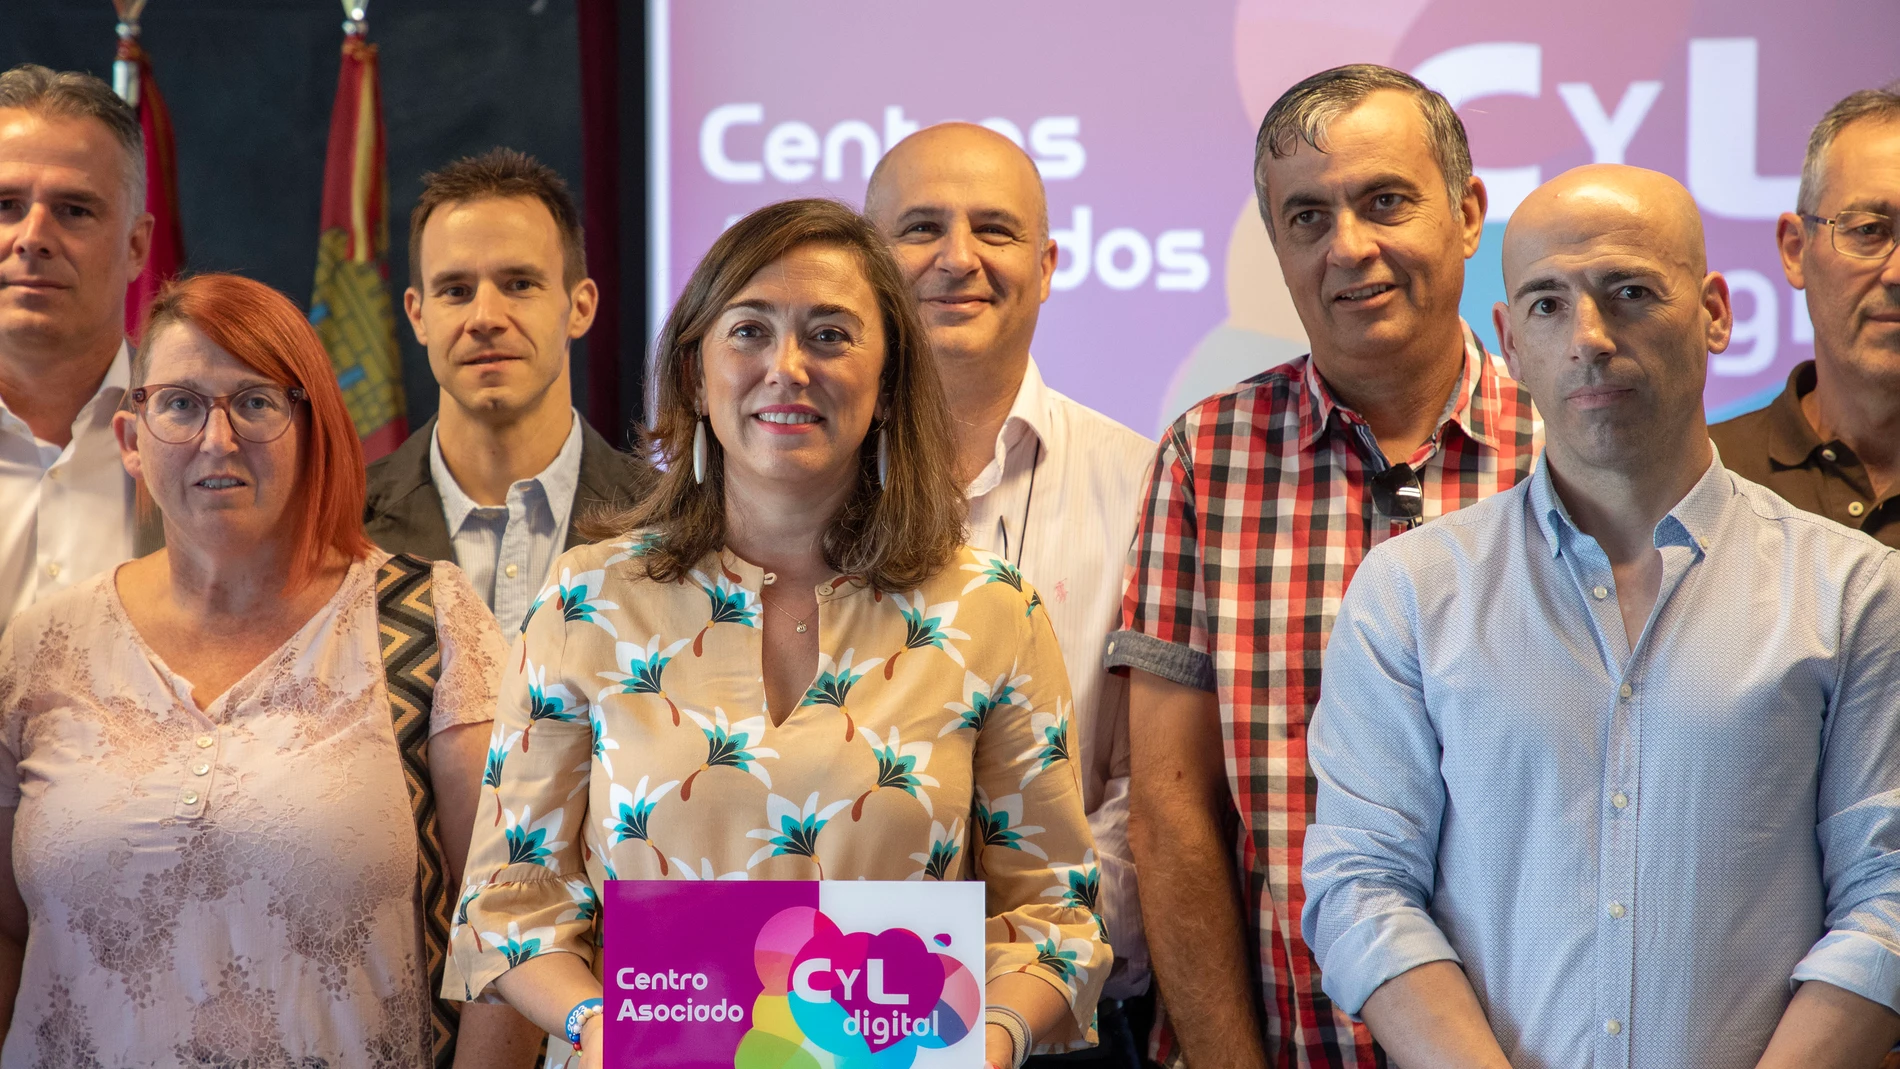 La consejera María González Corral presenta el Programa CyL Digital a empresarios de Salamanca